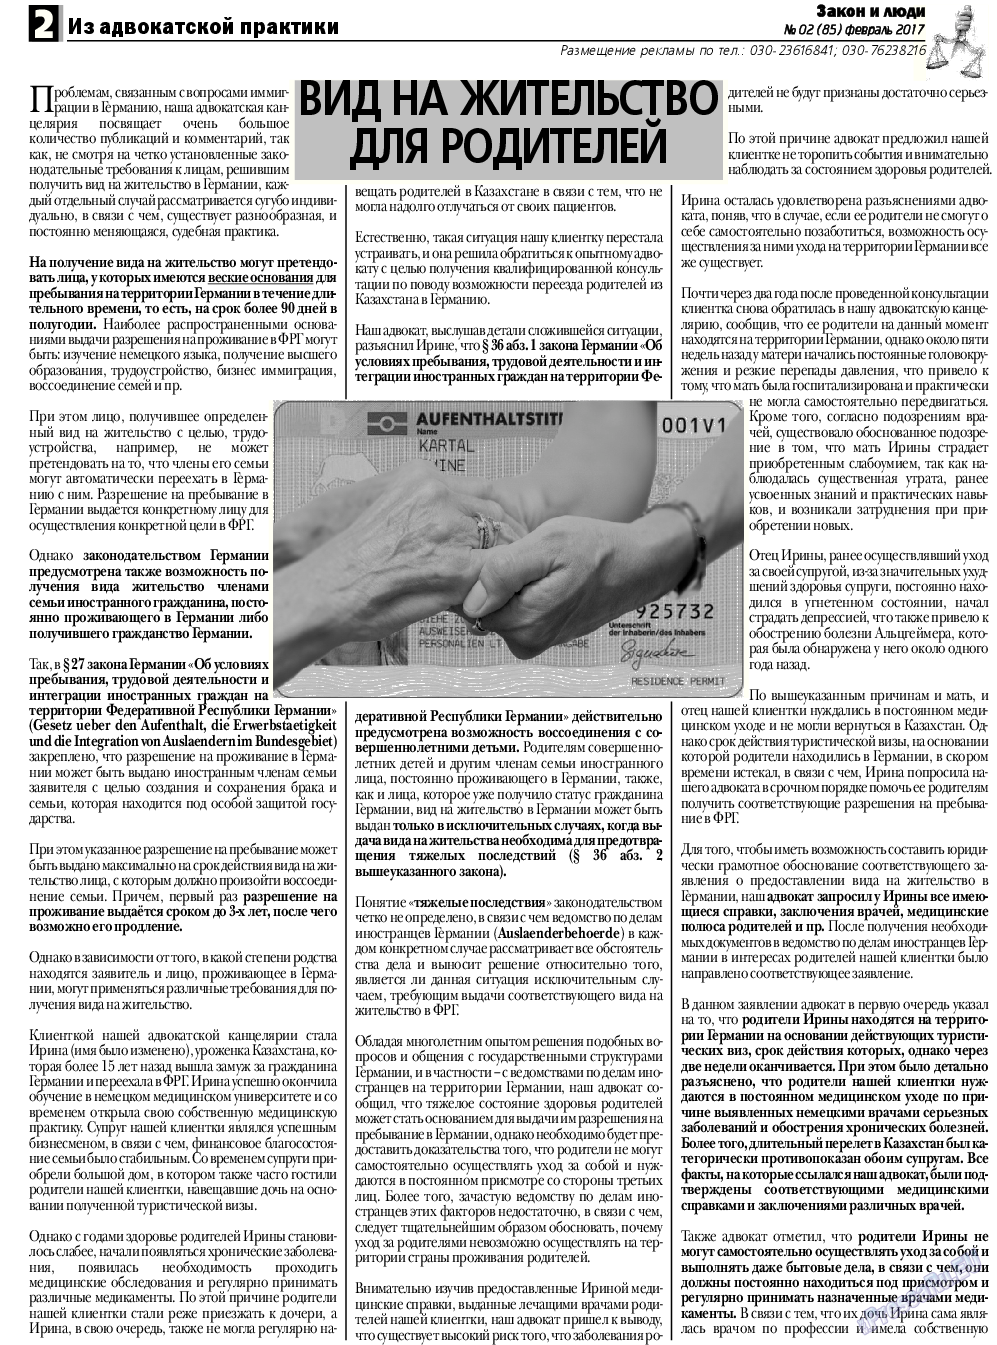 Закон и люди, газета. 2017 №2 стр.2